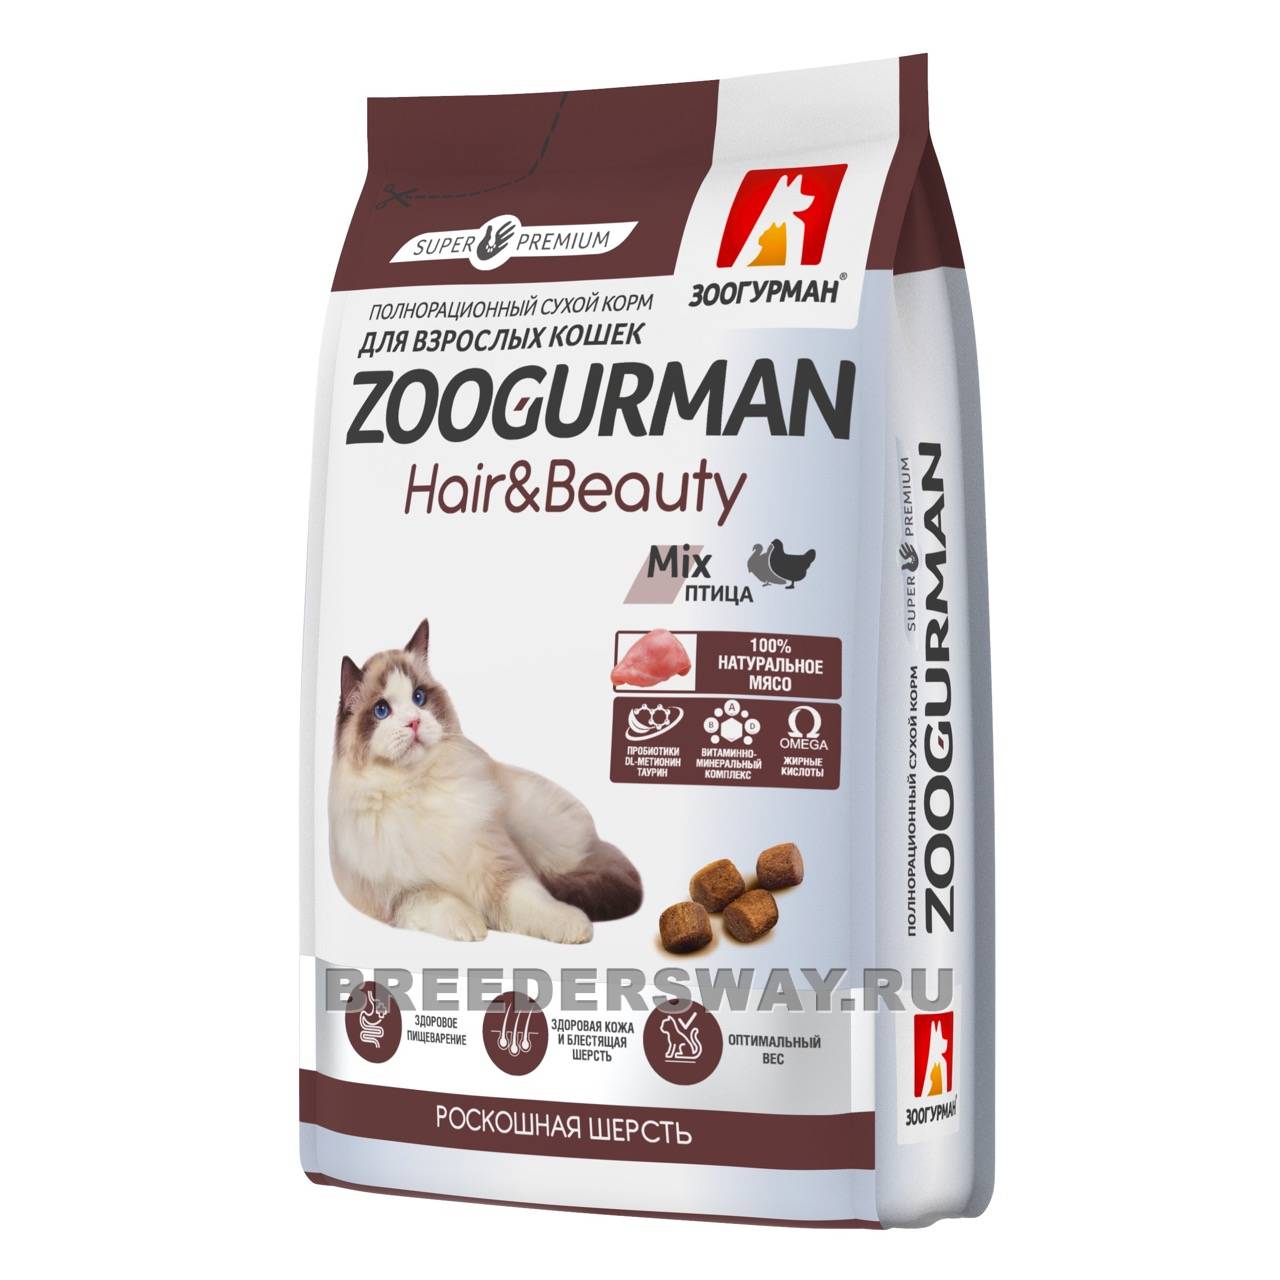 350гр Zoogurman Hair&Beauty для кошек супер-премиум Птица 30/15 10мм